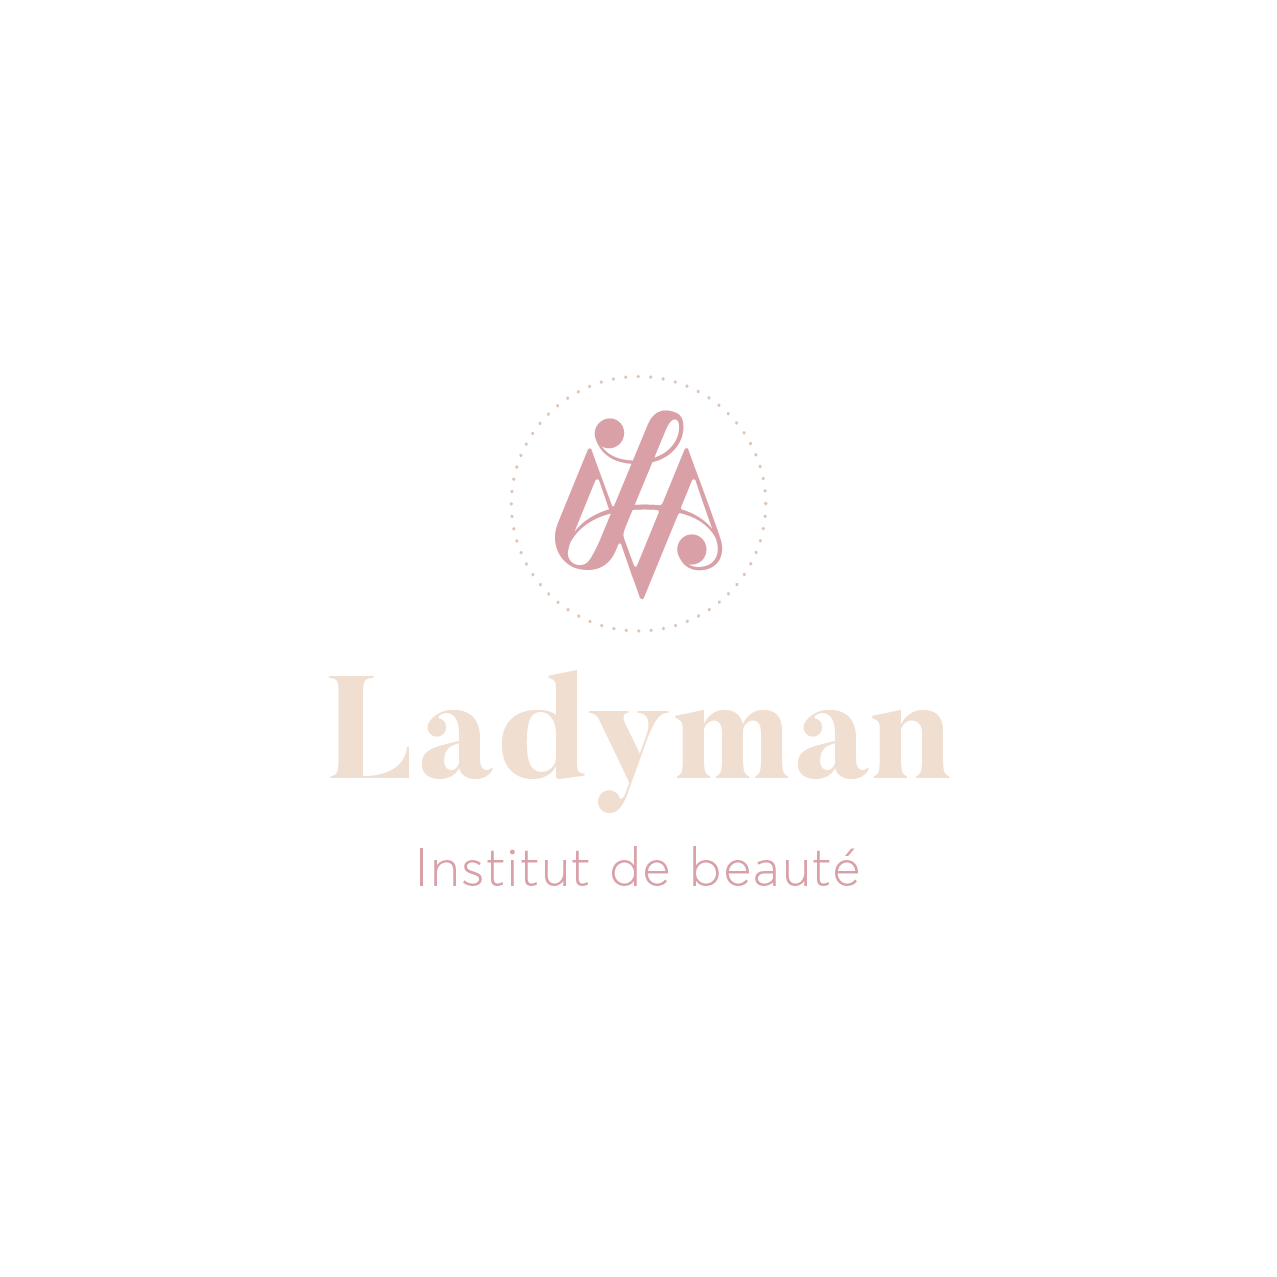 Institut de beauté Ladyman